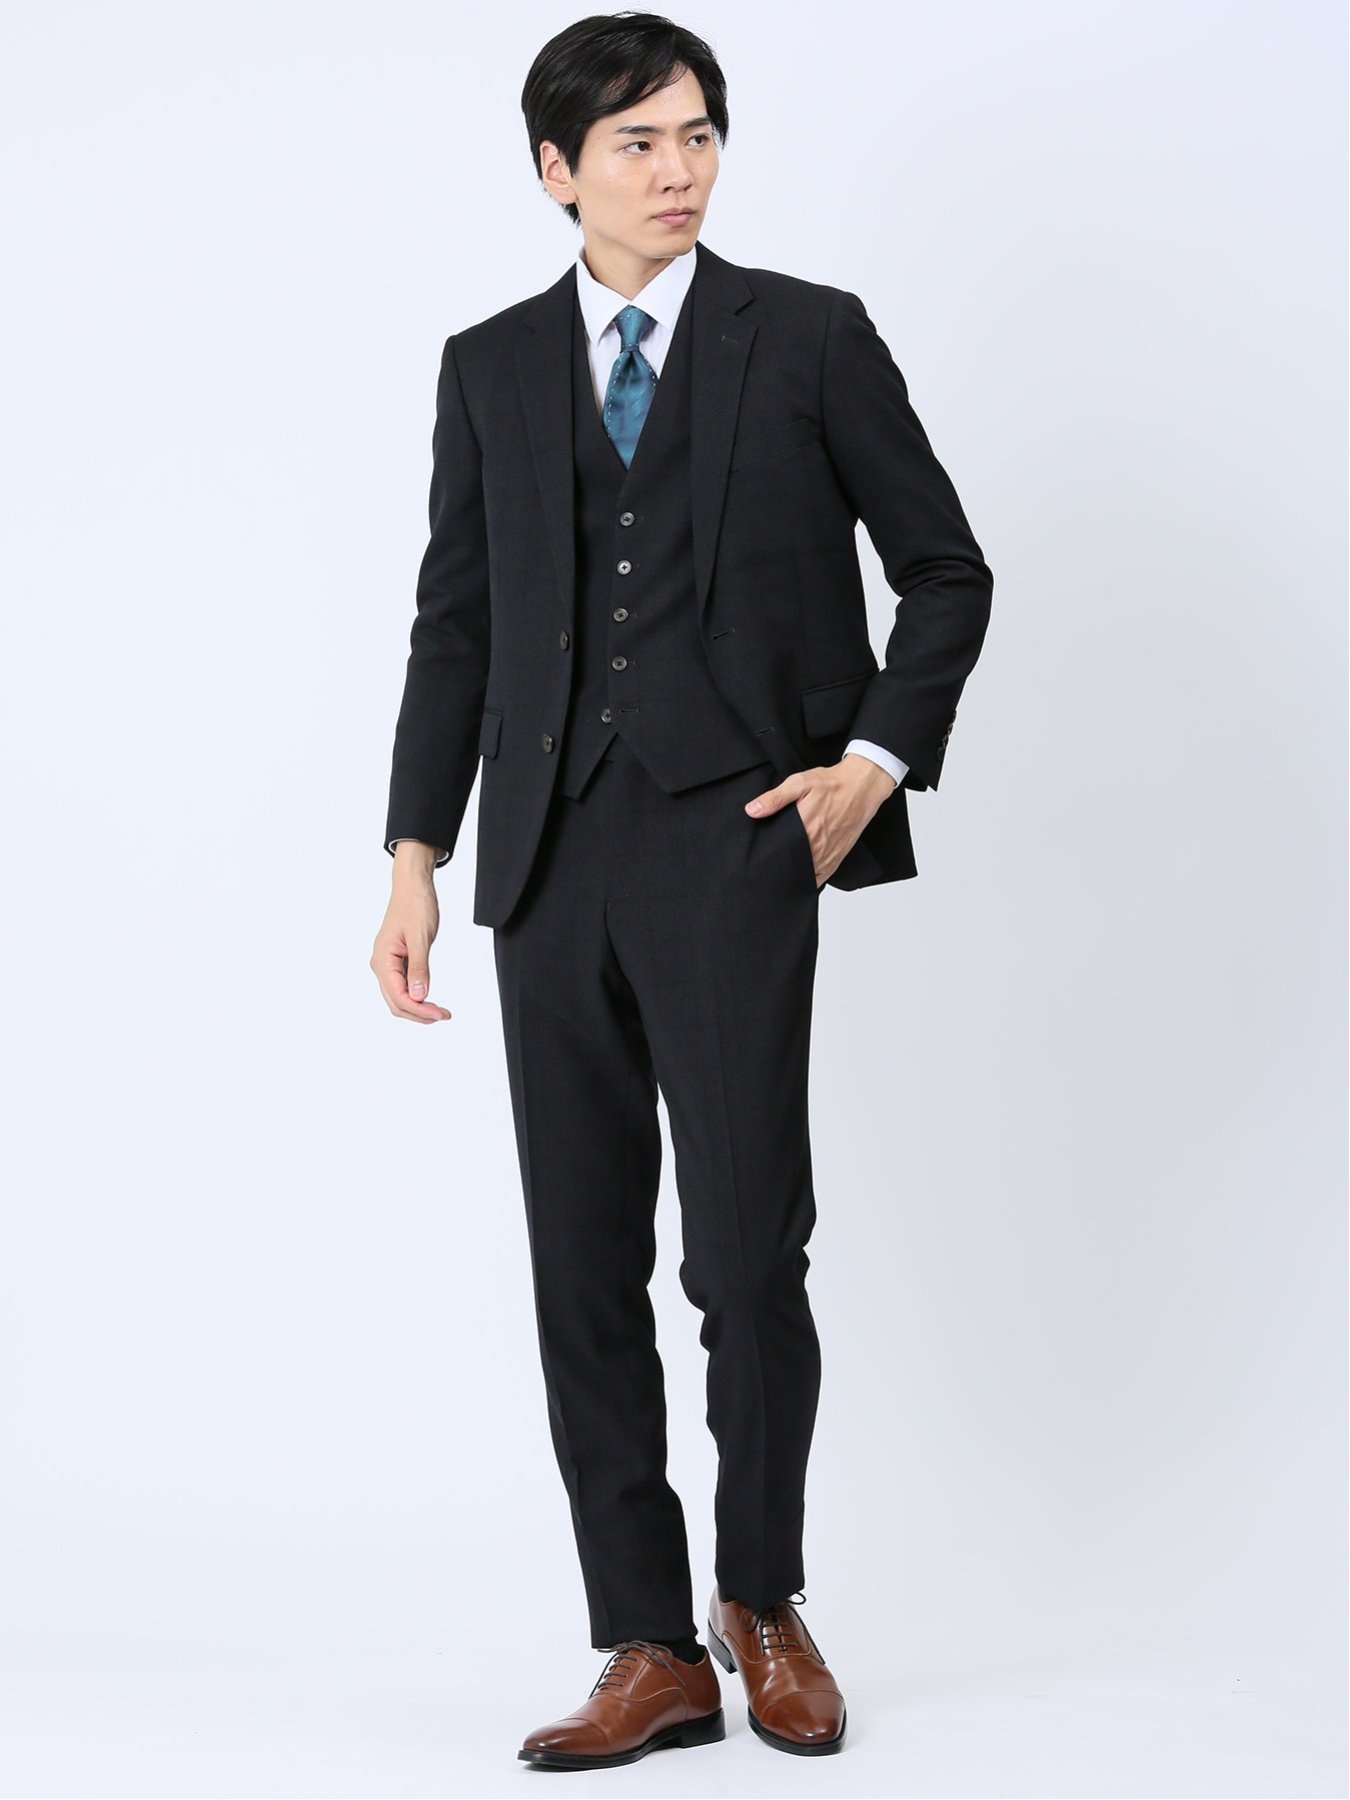 TAKA-Q Woolen Tec On スリムフィット 2ボタン3ピーススーツ チェック紺 セットアップ ジャケット ビジネス メンズ タカキュー スーツ フォーマル セットアップスーツ ネイビー【送料無料】